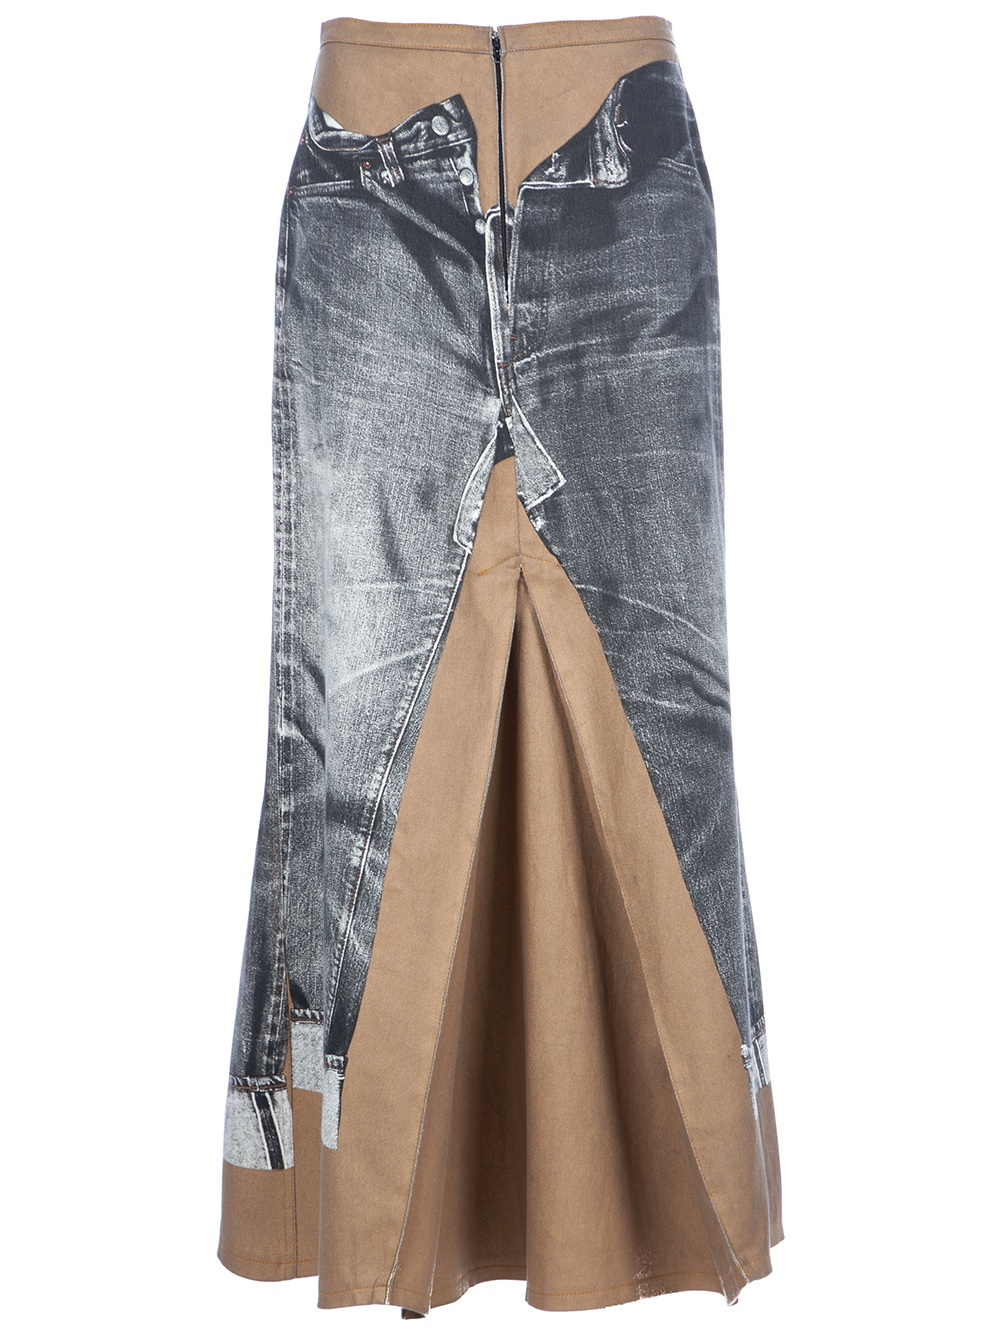 Jean Paul Gaultier Trompe L'Oeil Skirt in Gray | Lyst